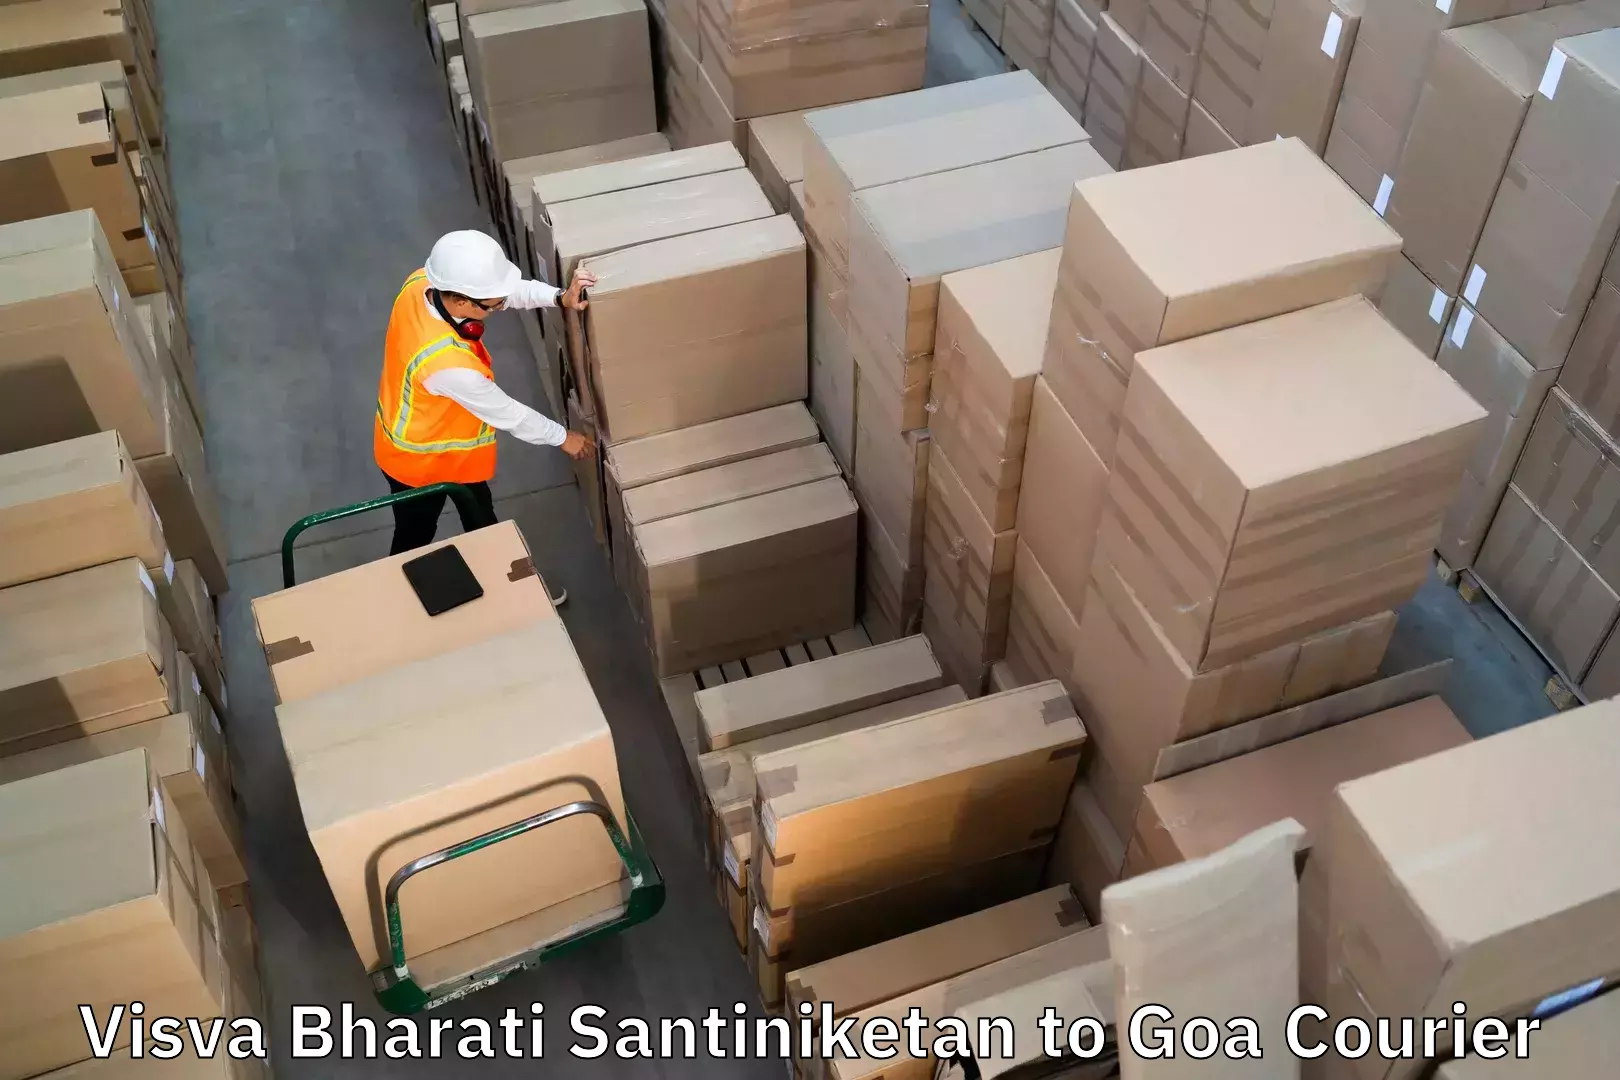 Baggage transport innovation Visva Bharati Santiniketan to Panjim